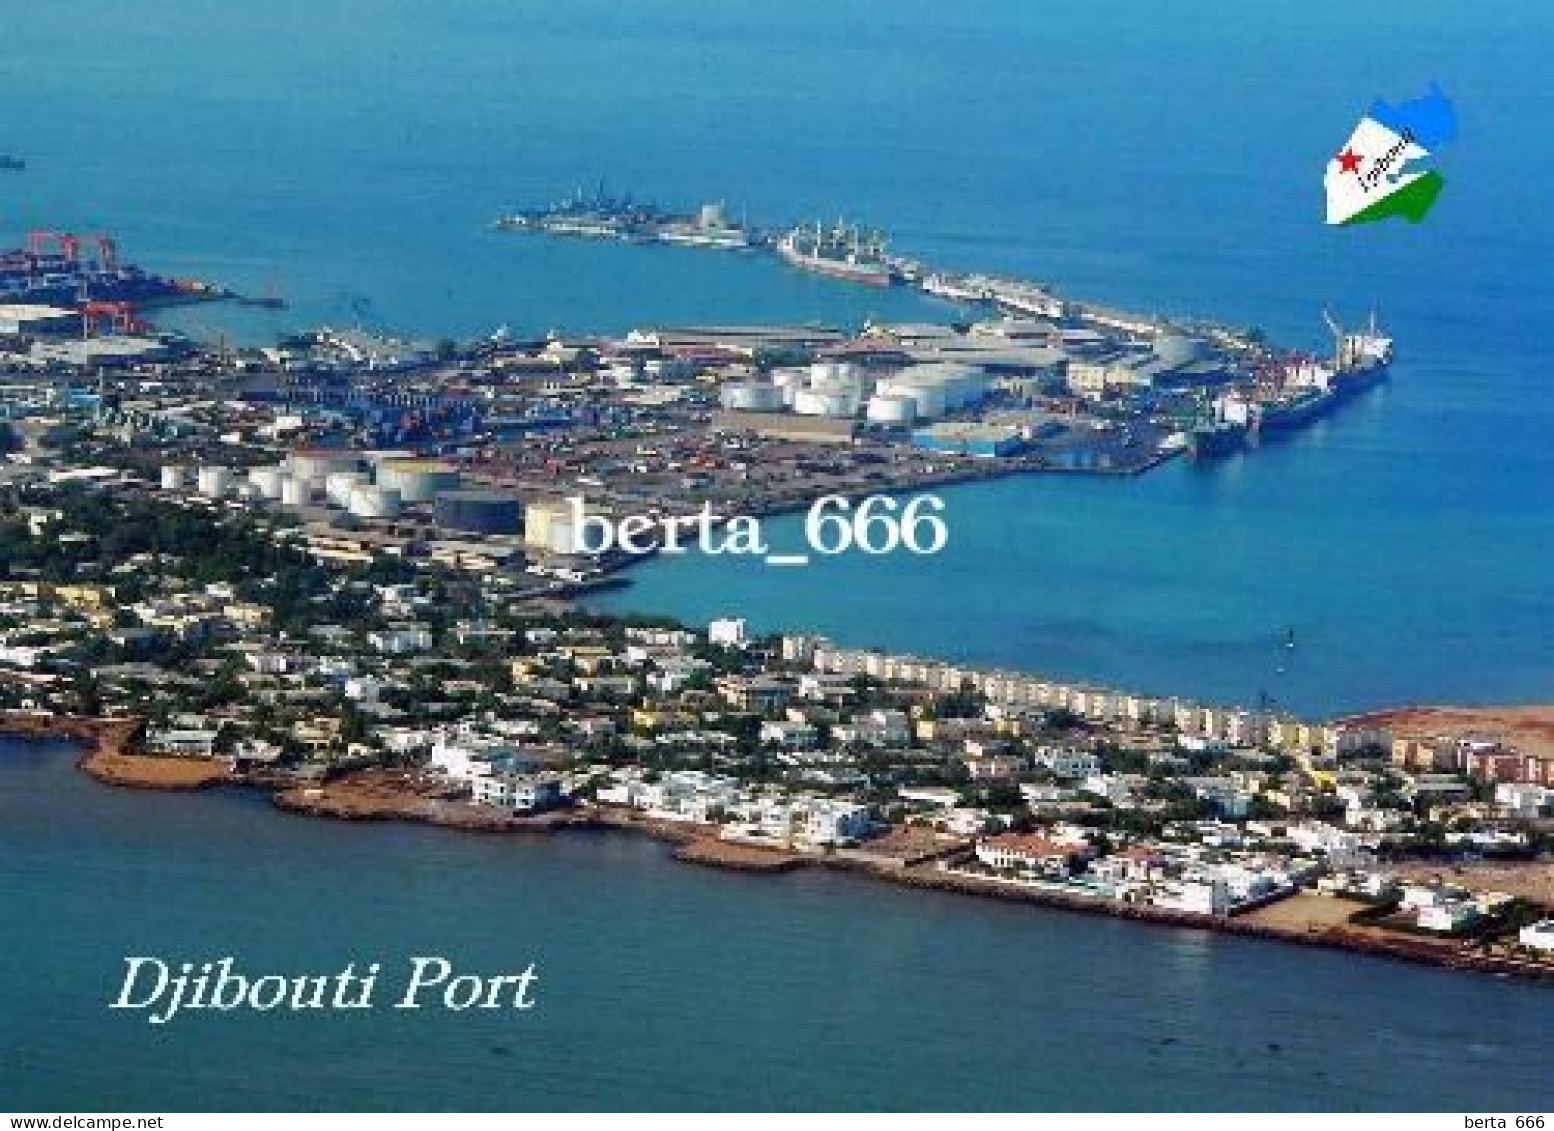 Djibouti City Port Aerial View New Postcard - Djibouti